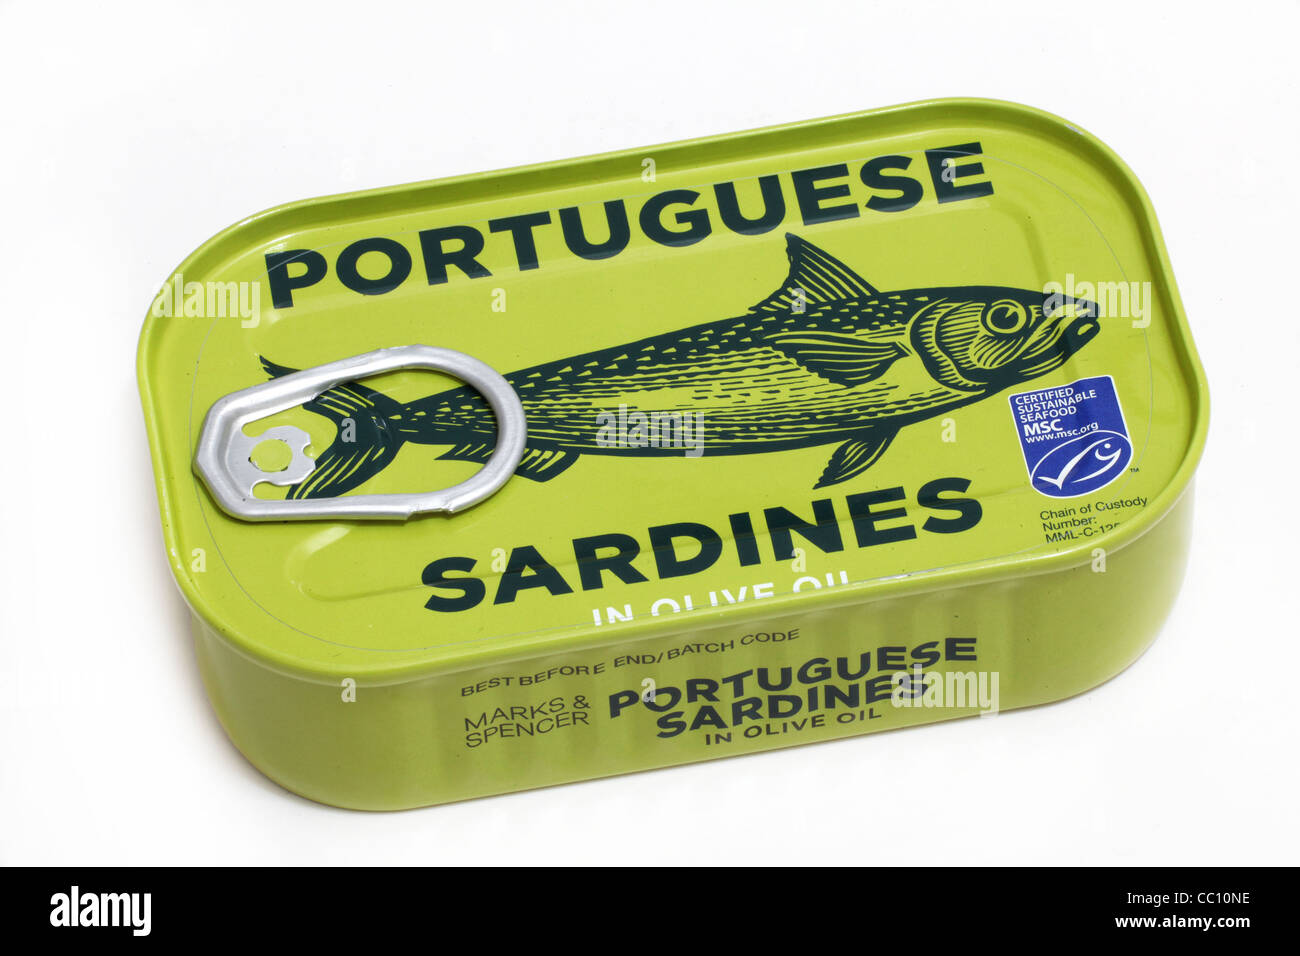 Portuguese Sardines